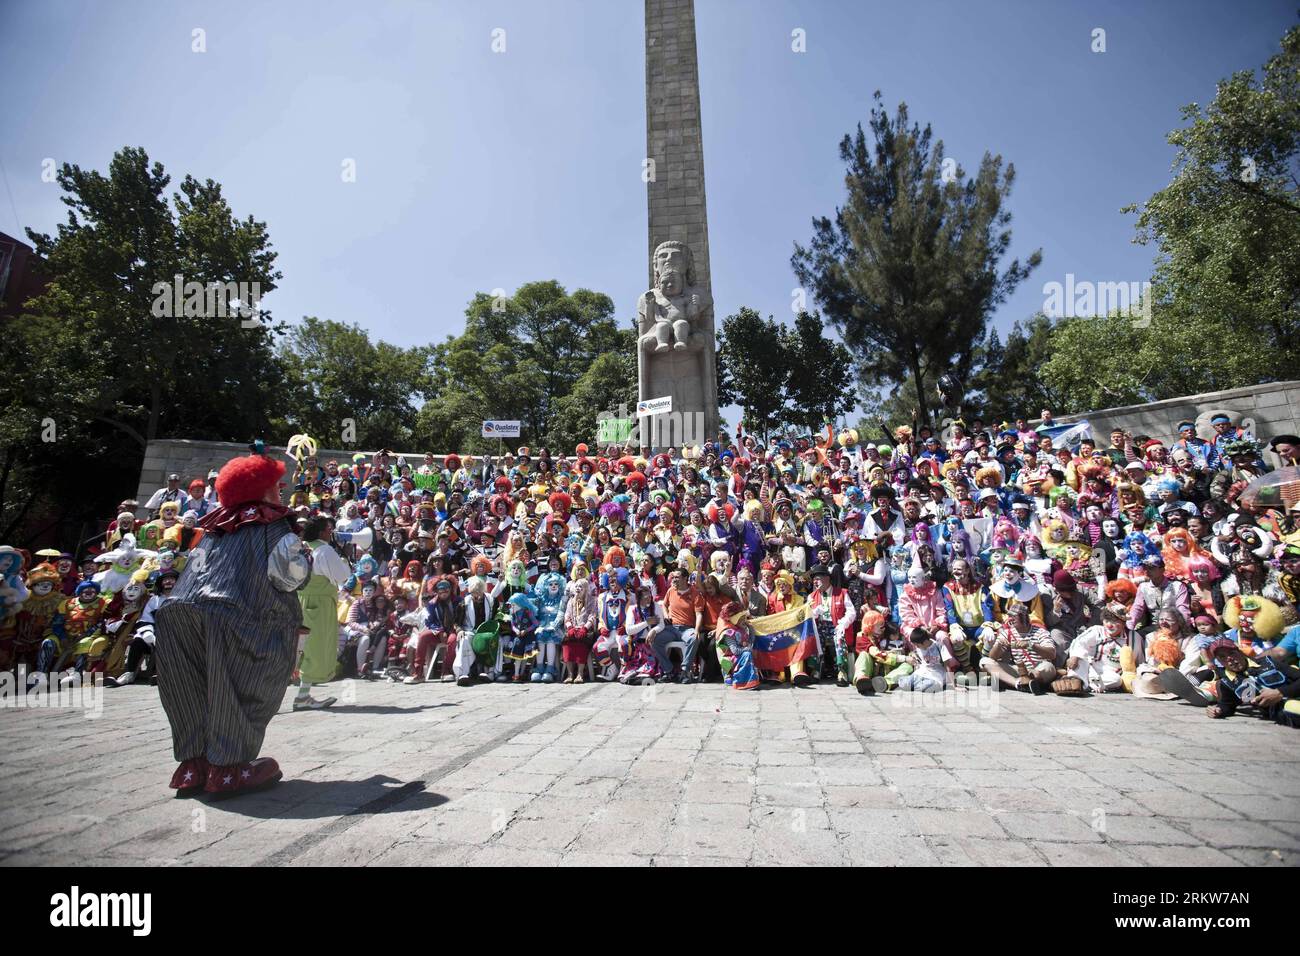 Bildnummer: 58627429 Datum: 24.10.2012 Copyright: imago/Xinhua (121025) -- CITTÀ DEL MESSICO, 25 ottobre 2012 (Xinhua) -- Clowns posa per una foto durante la diciassettesima Convenzione Internazionale di Clown a città del Messico, capitale del Messico, il 24 ottobre 2012. La convention ha attirato oltre 1.000 clown da tutto il mondo in diversi eventi per quattro giorni. (Xinhua/Rodrigo Oropeza) (lr) CITTÀ DEL MESSICO-MESSICO-17TH CLOWN INTERNATIONAL CONVENTION PUBLICATIONxNOTxINxCHN Kultur Entertainment Clowns Straßentheater Festival xjh x0x 2012 quer 58627429 Data 24 10 2012 Copyright Imago XINHUA città del Messico OCT 25 2012 XINH Foto Stock